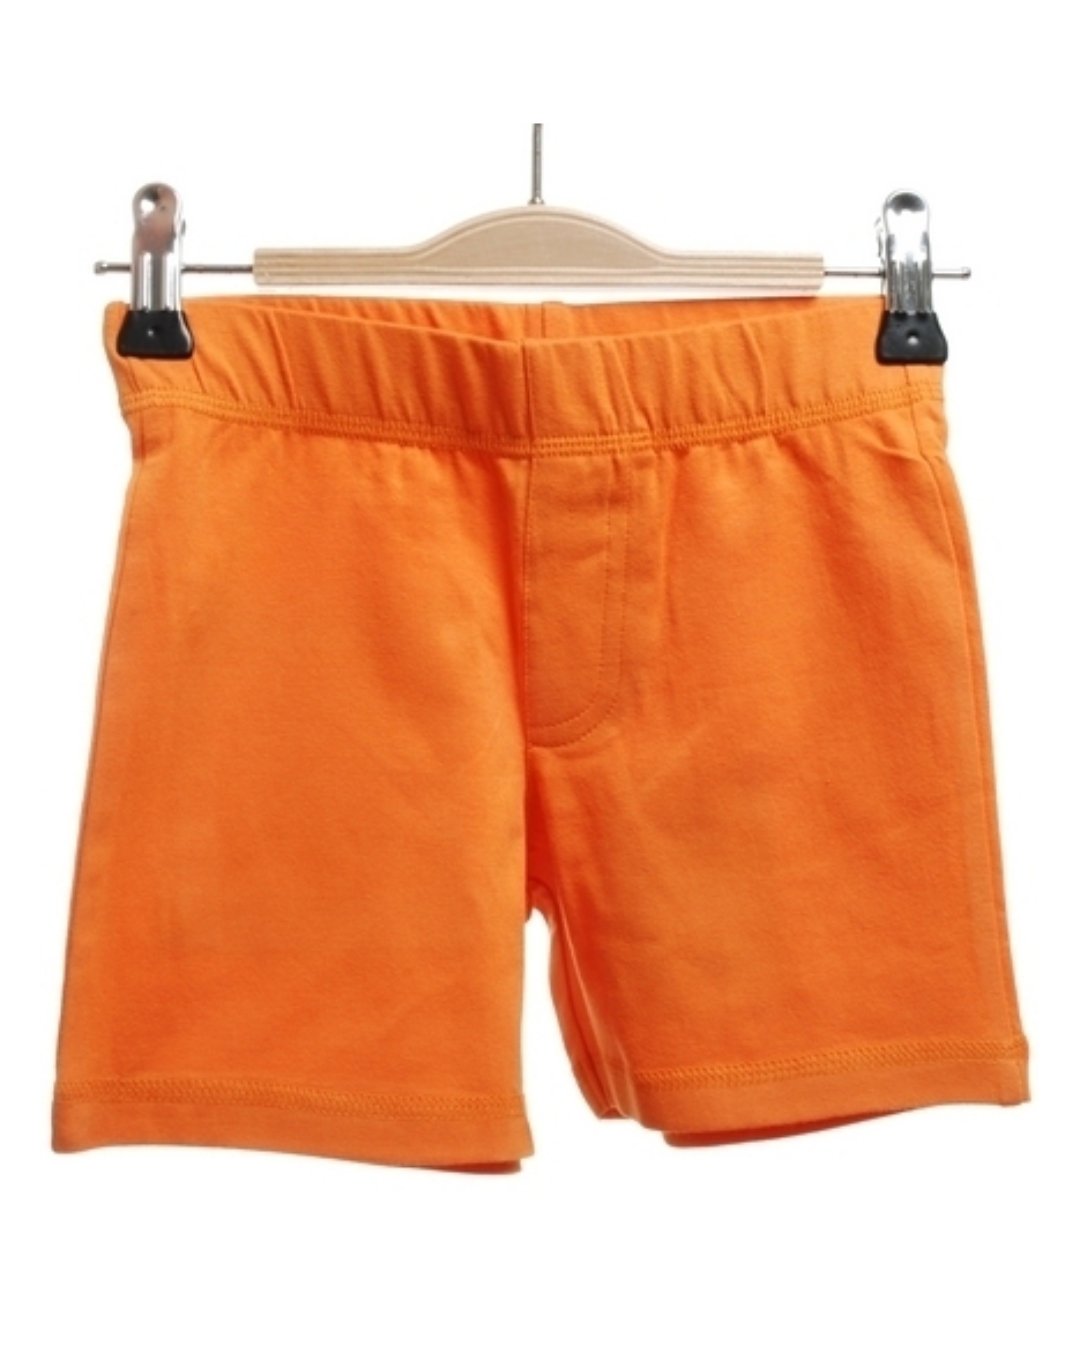 Orange Shorts für Kinder aus Biobaumwolle von Duns Sweden